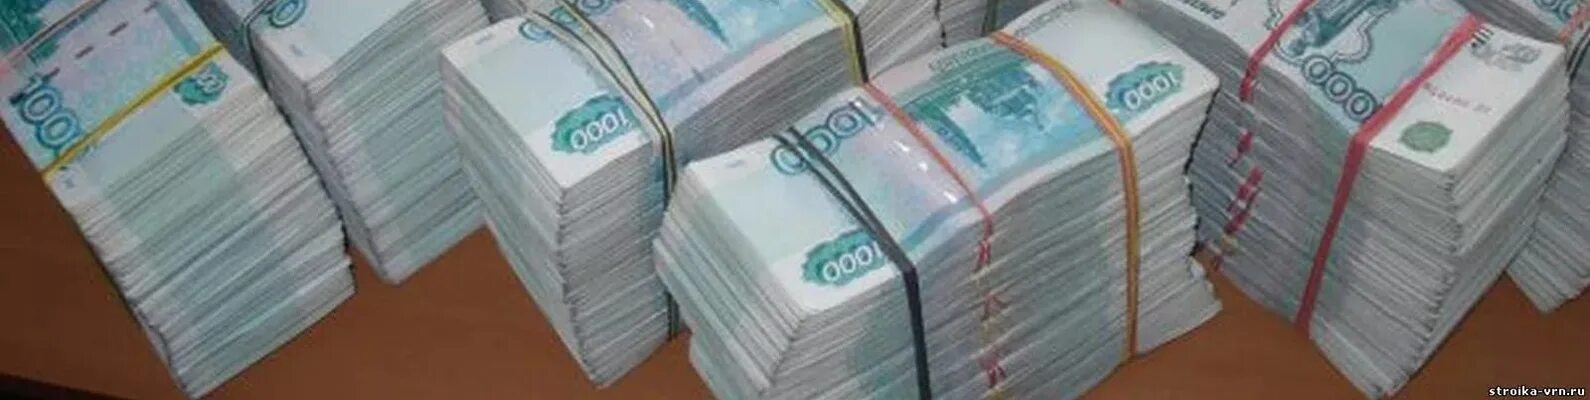 600 миллионов рублей. Раффсл продает за 600 млн.